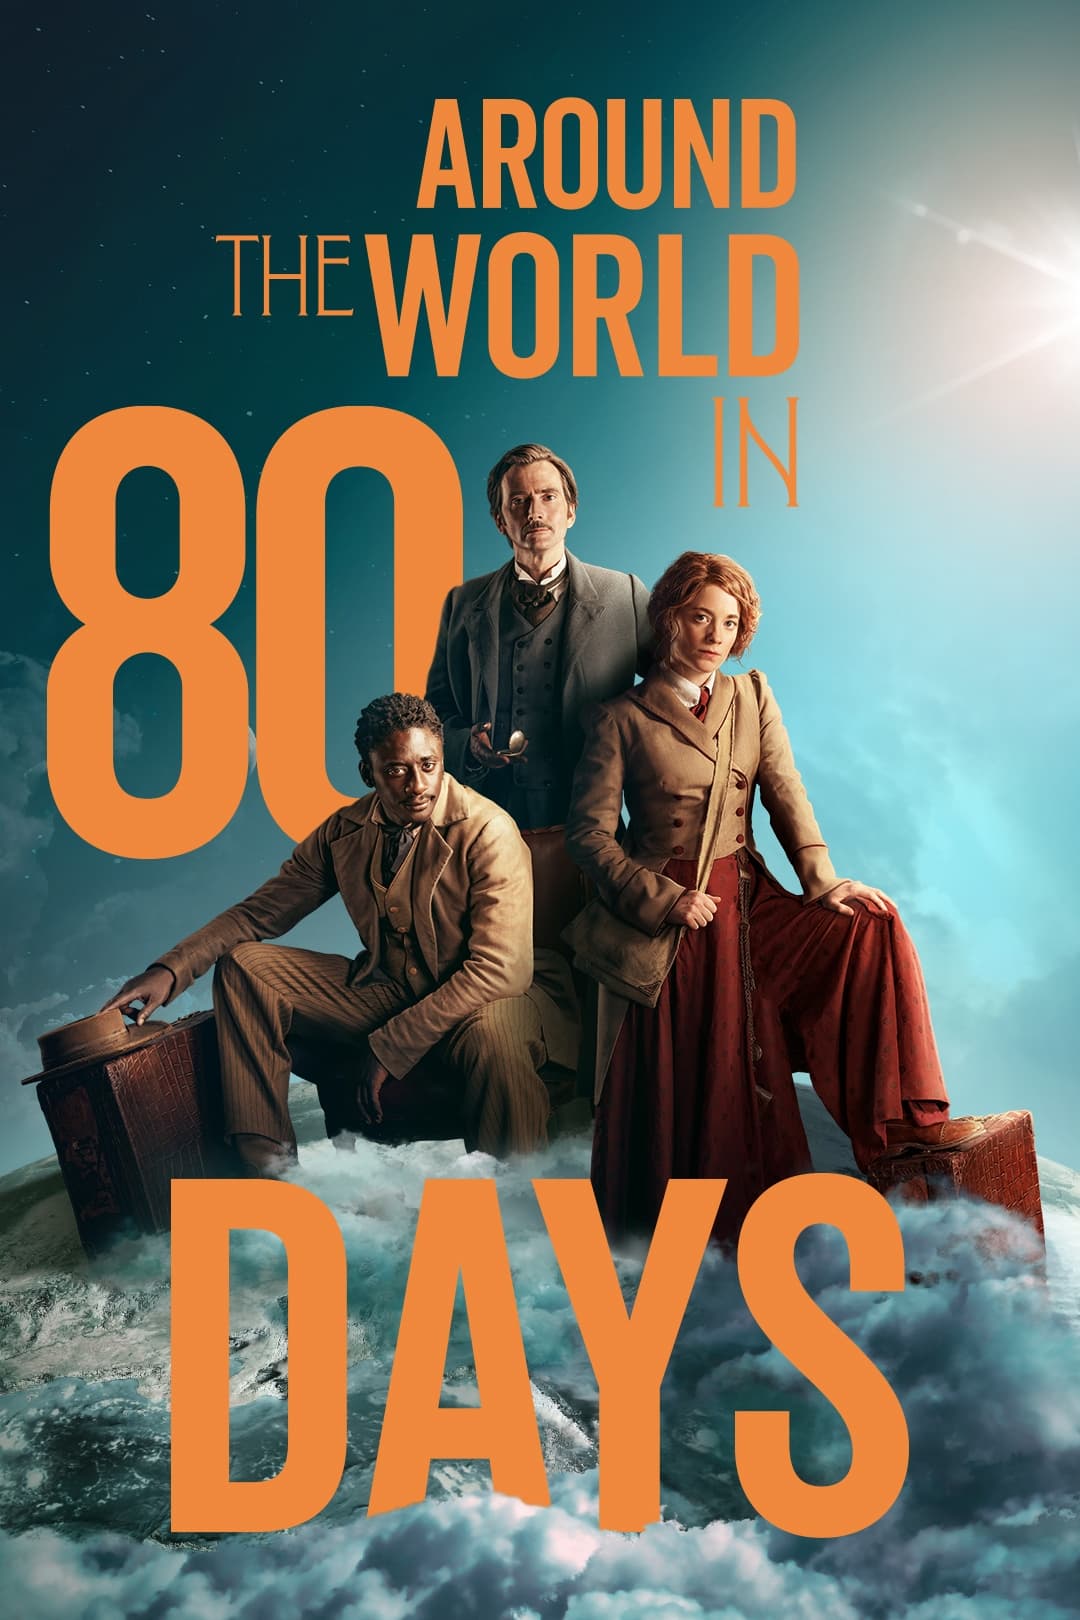 A Volta ao Mundo em 80 Dias